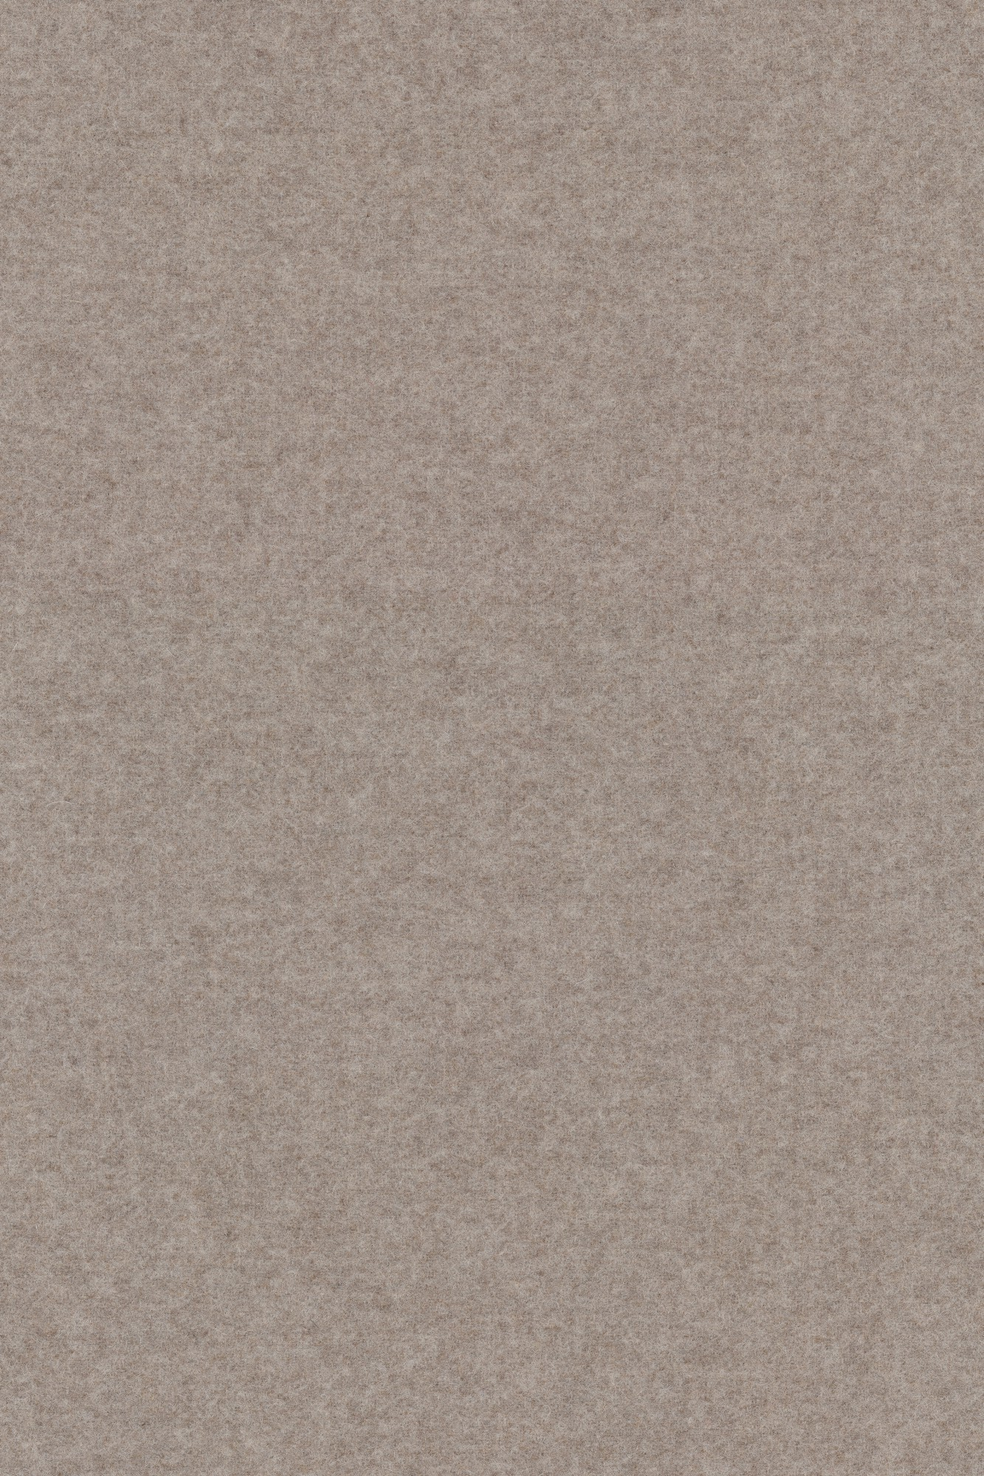 Fabric sample Divina Melange 3 227 grey